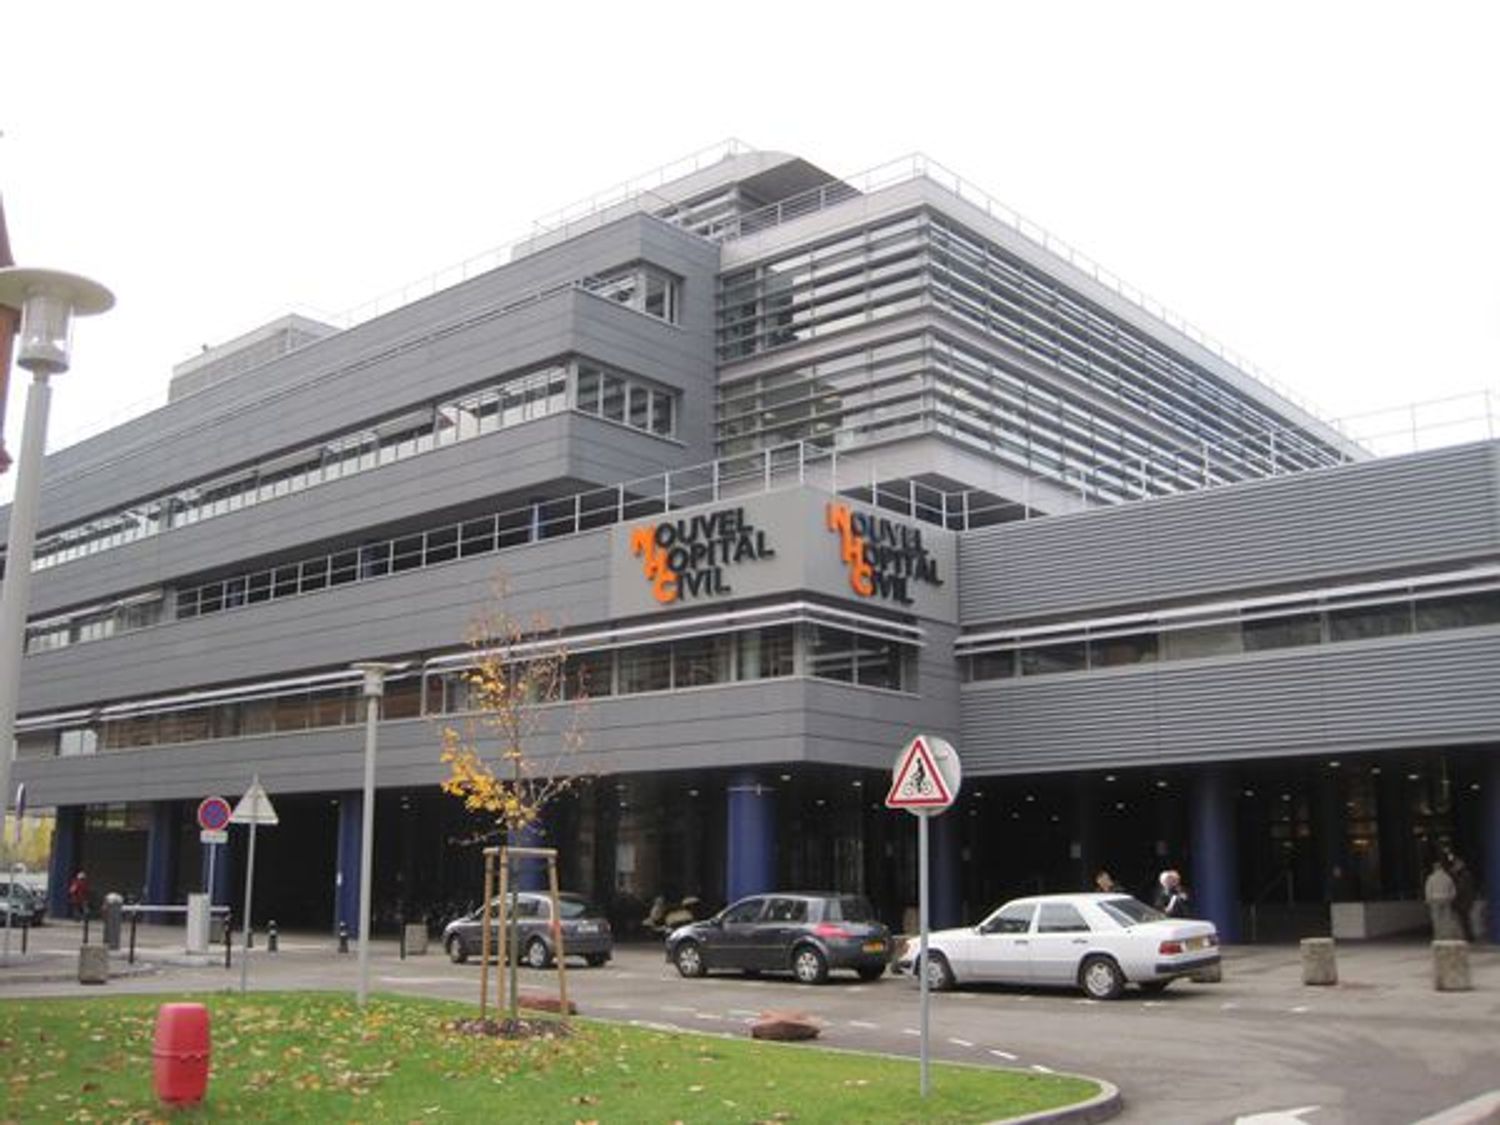 Le Nouvel Hôpital Civil de Strasbourg fait parti des 20 hôpitaux visités par les députés NUPES.